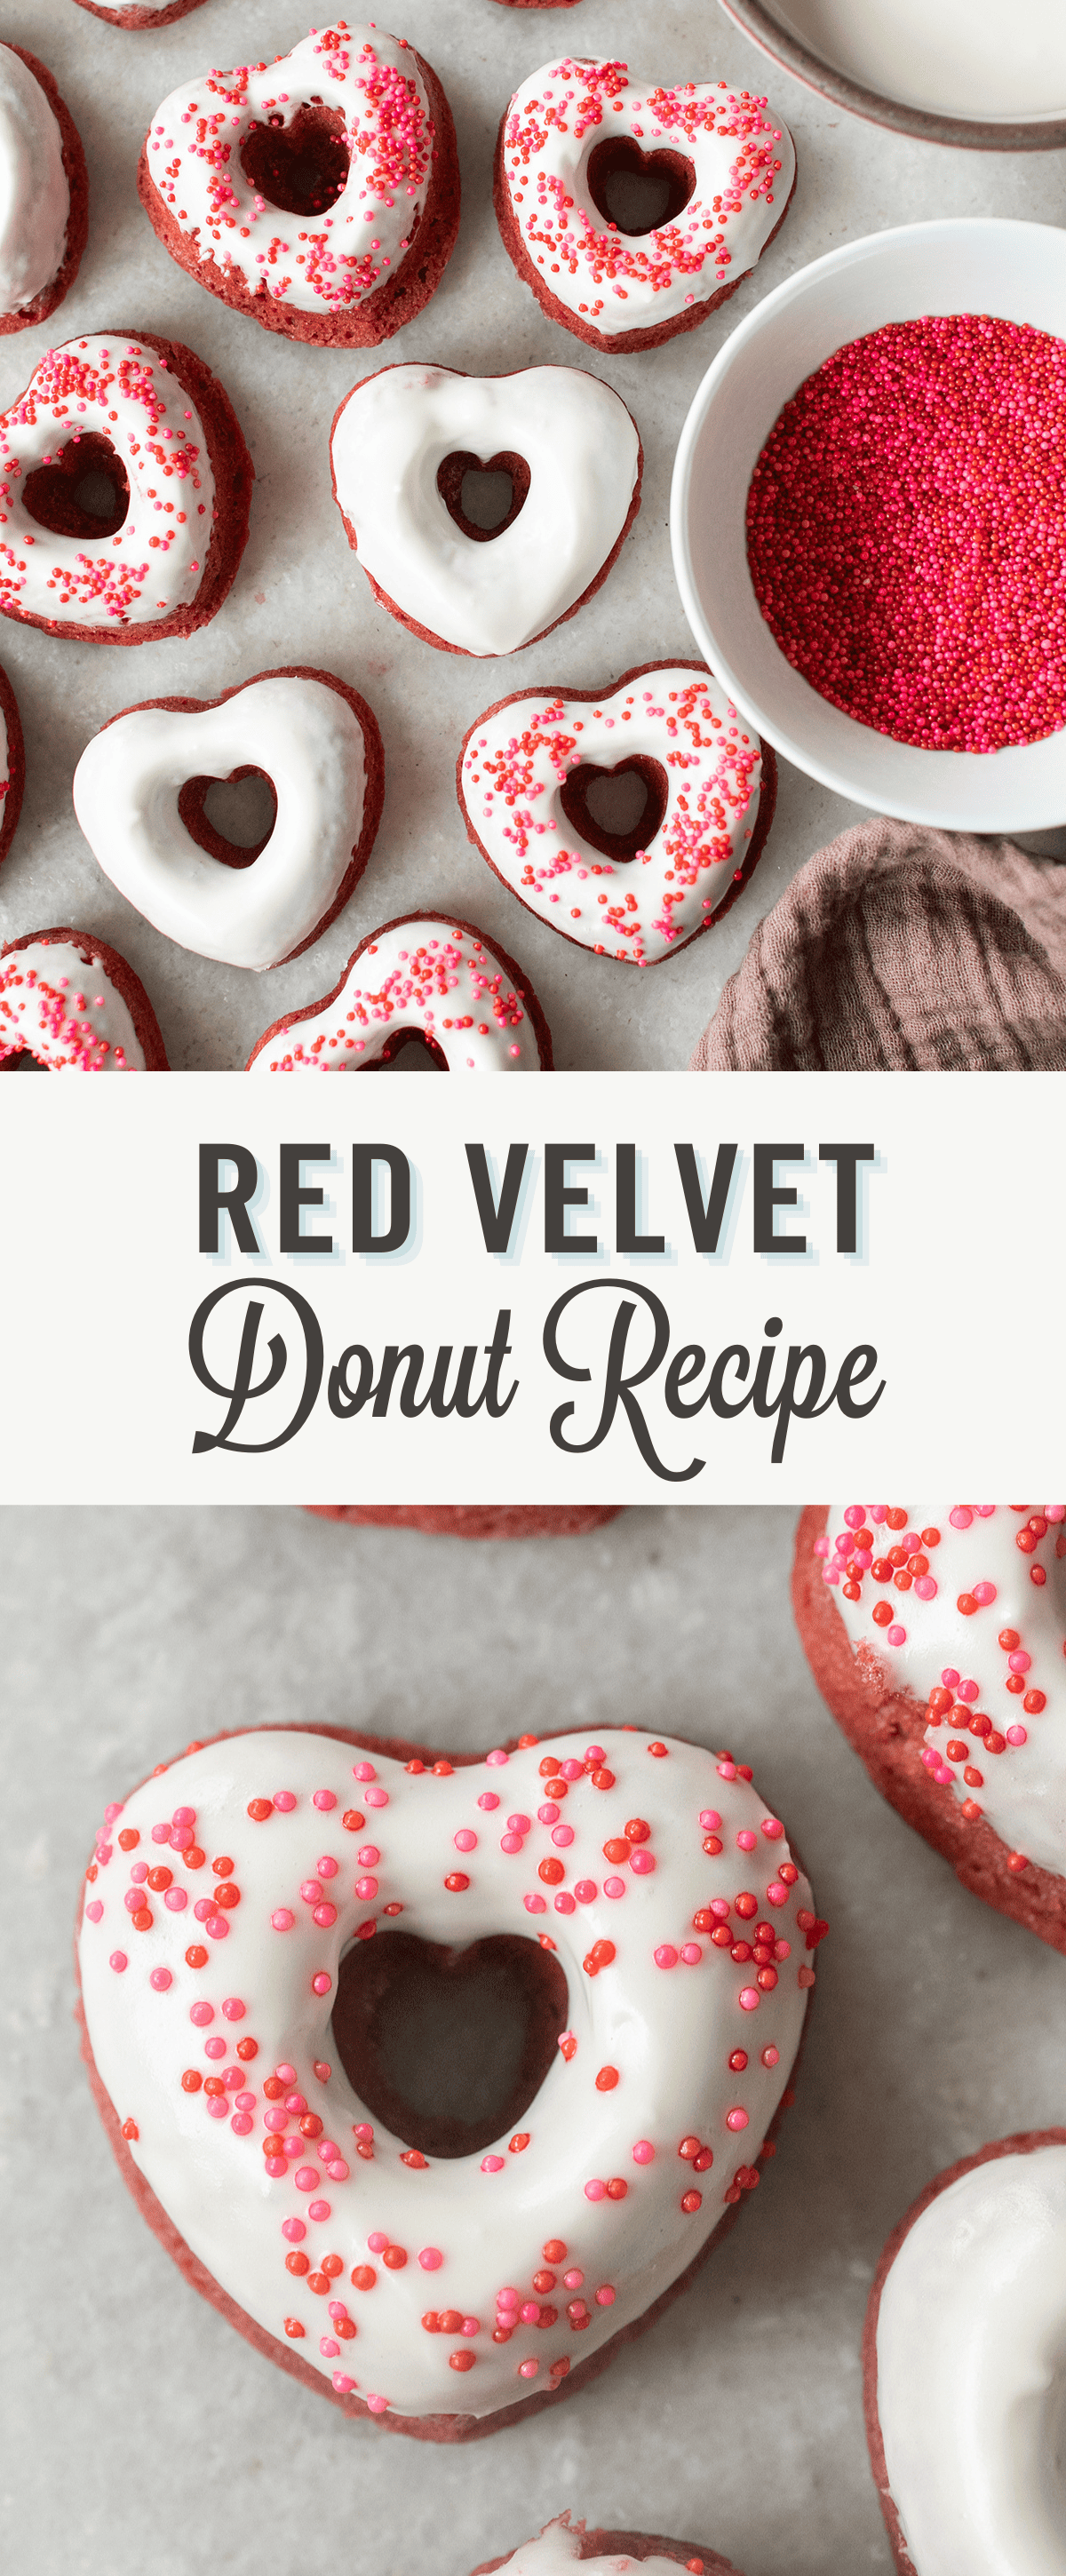 Red velvet donuts.